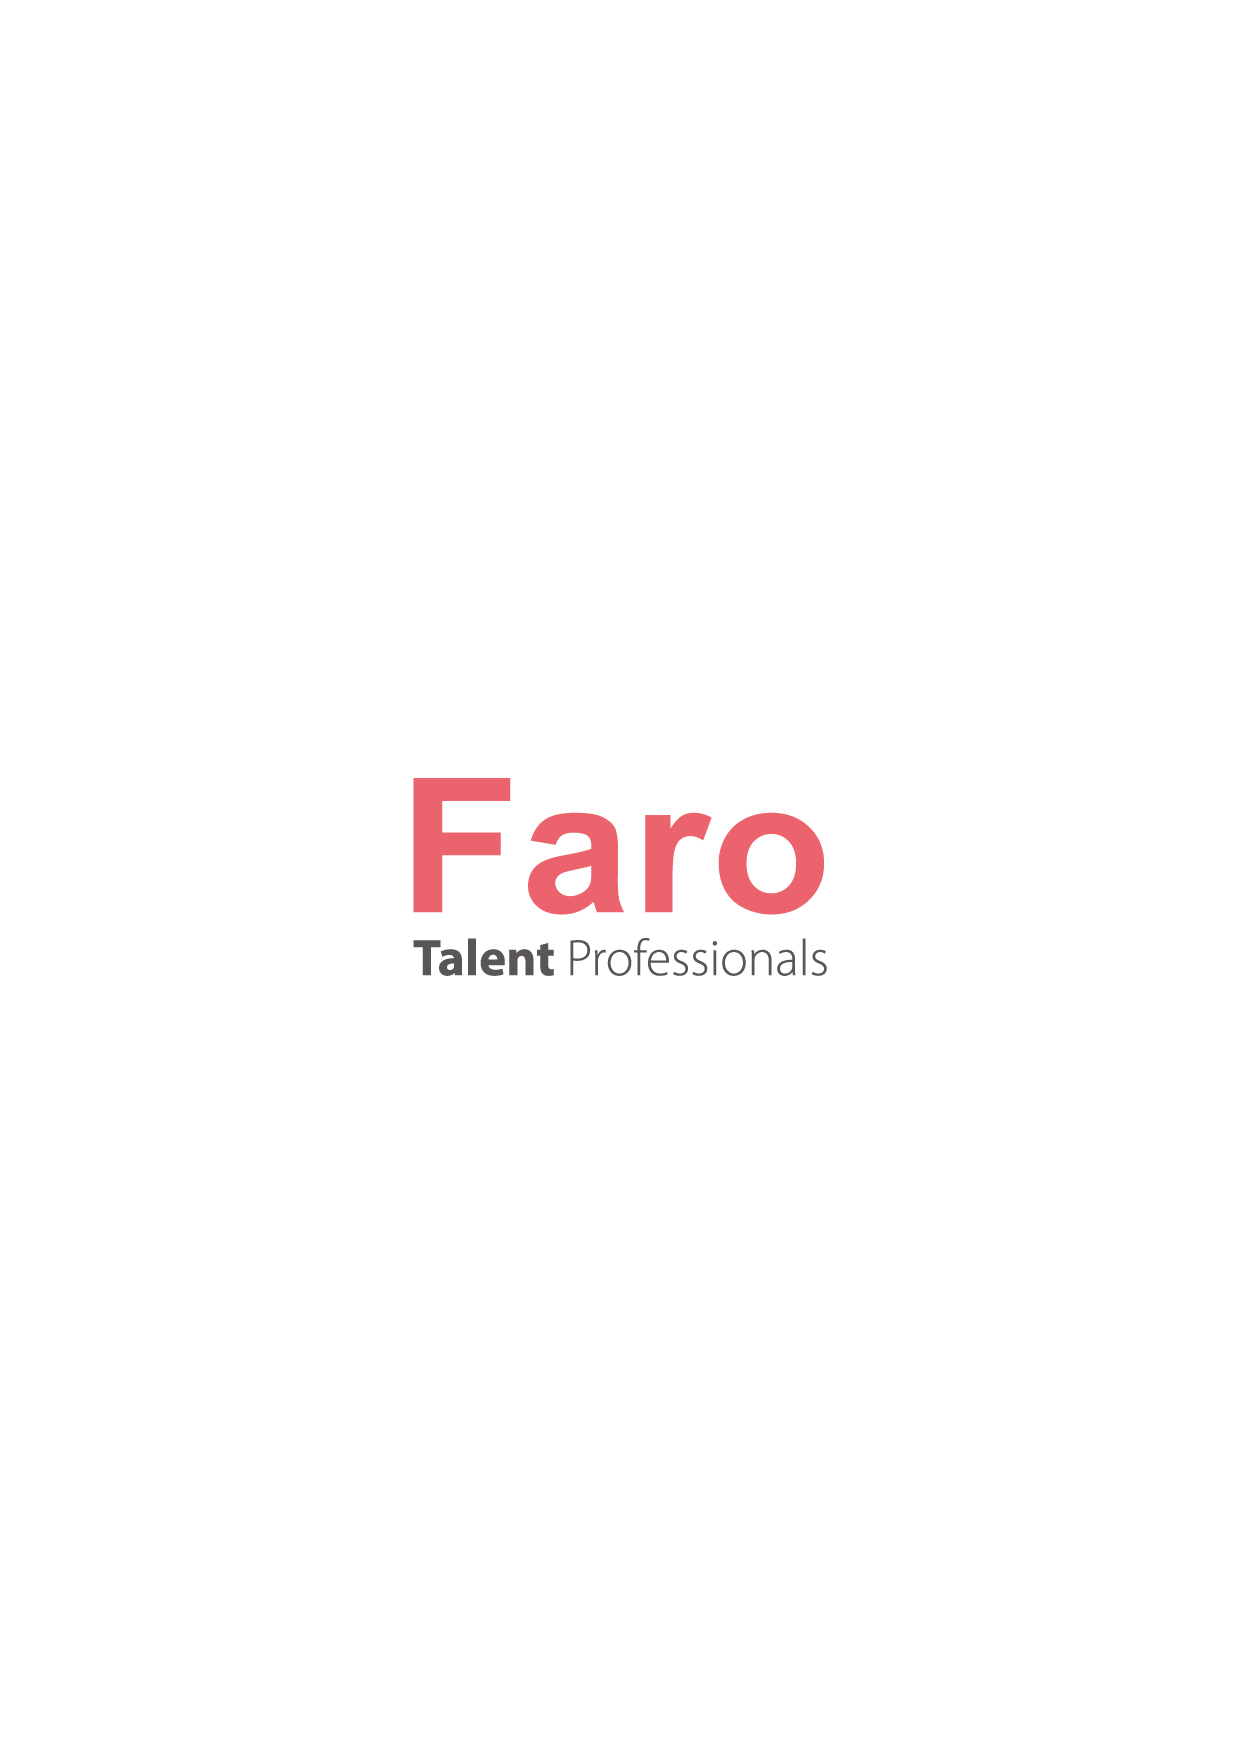 Faro Recruitment Hong Kong